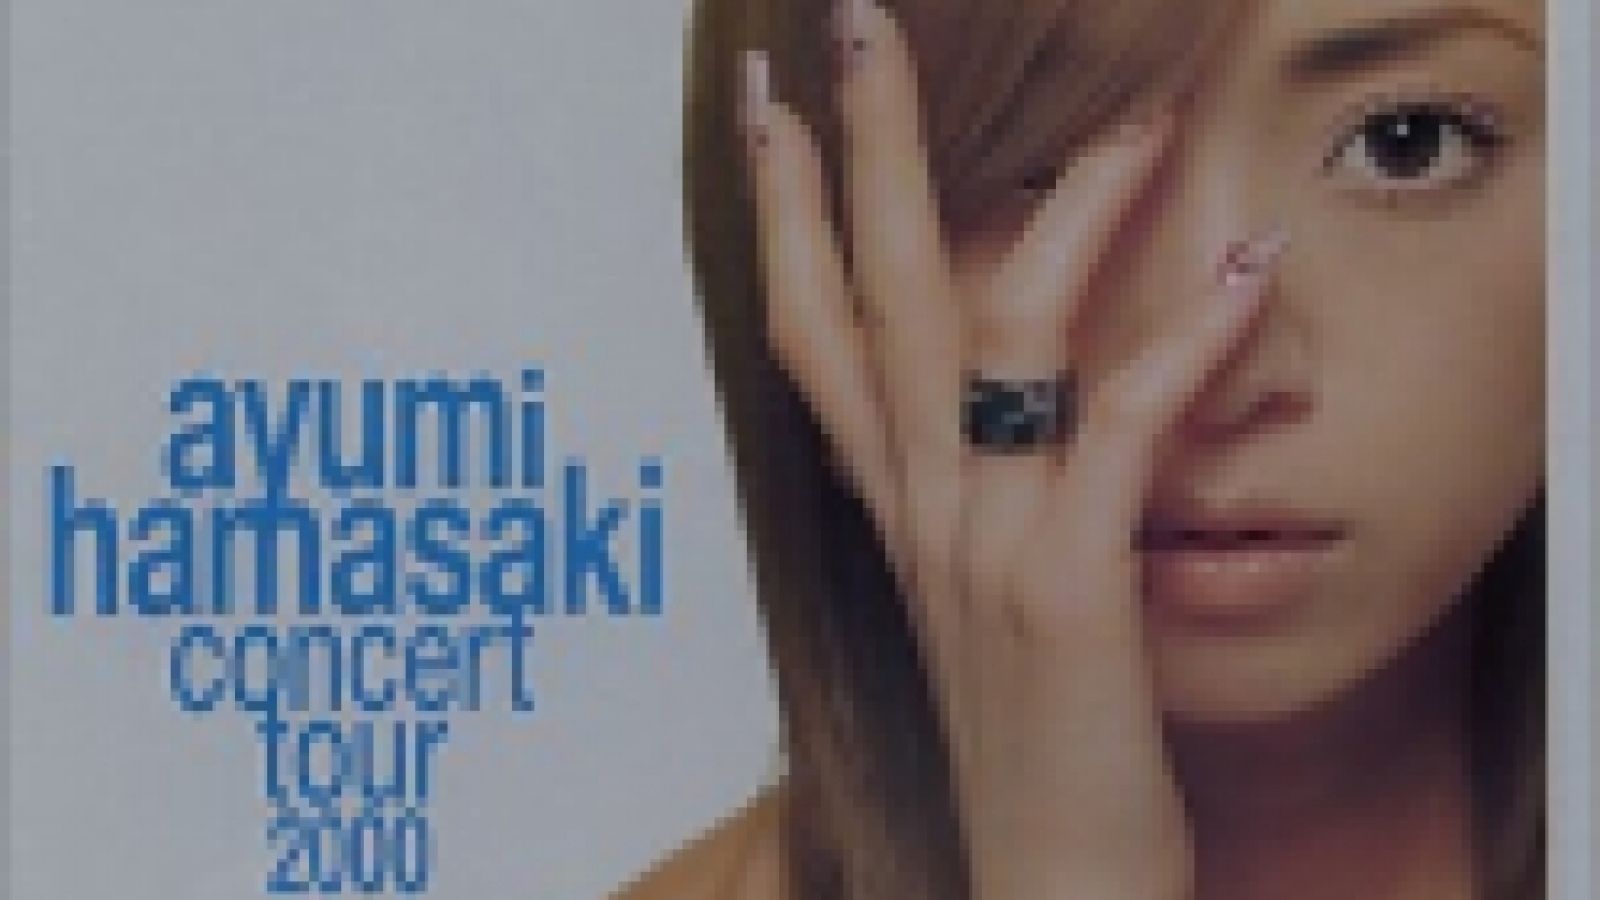 Ayumi Hamasaki - concert tour 2000 A -1- © 